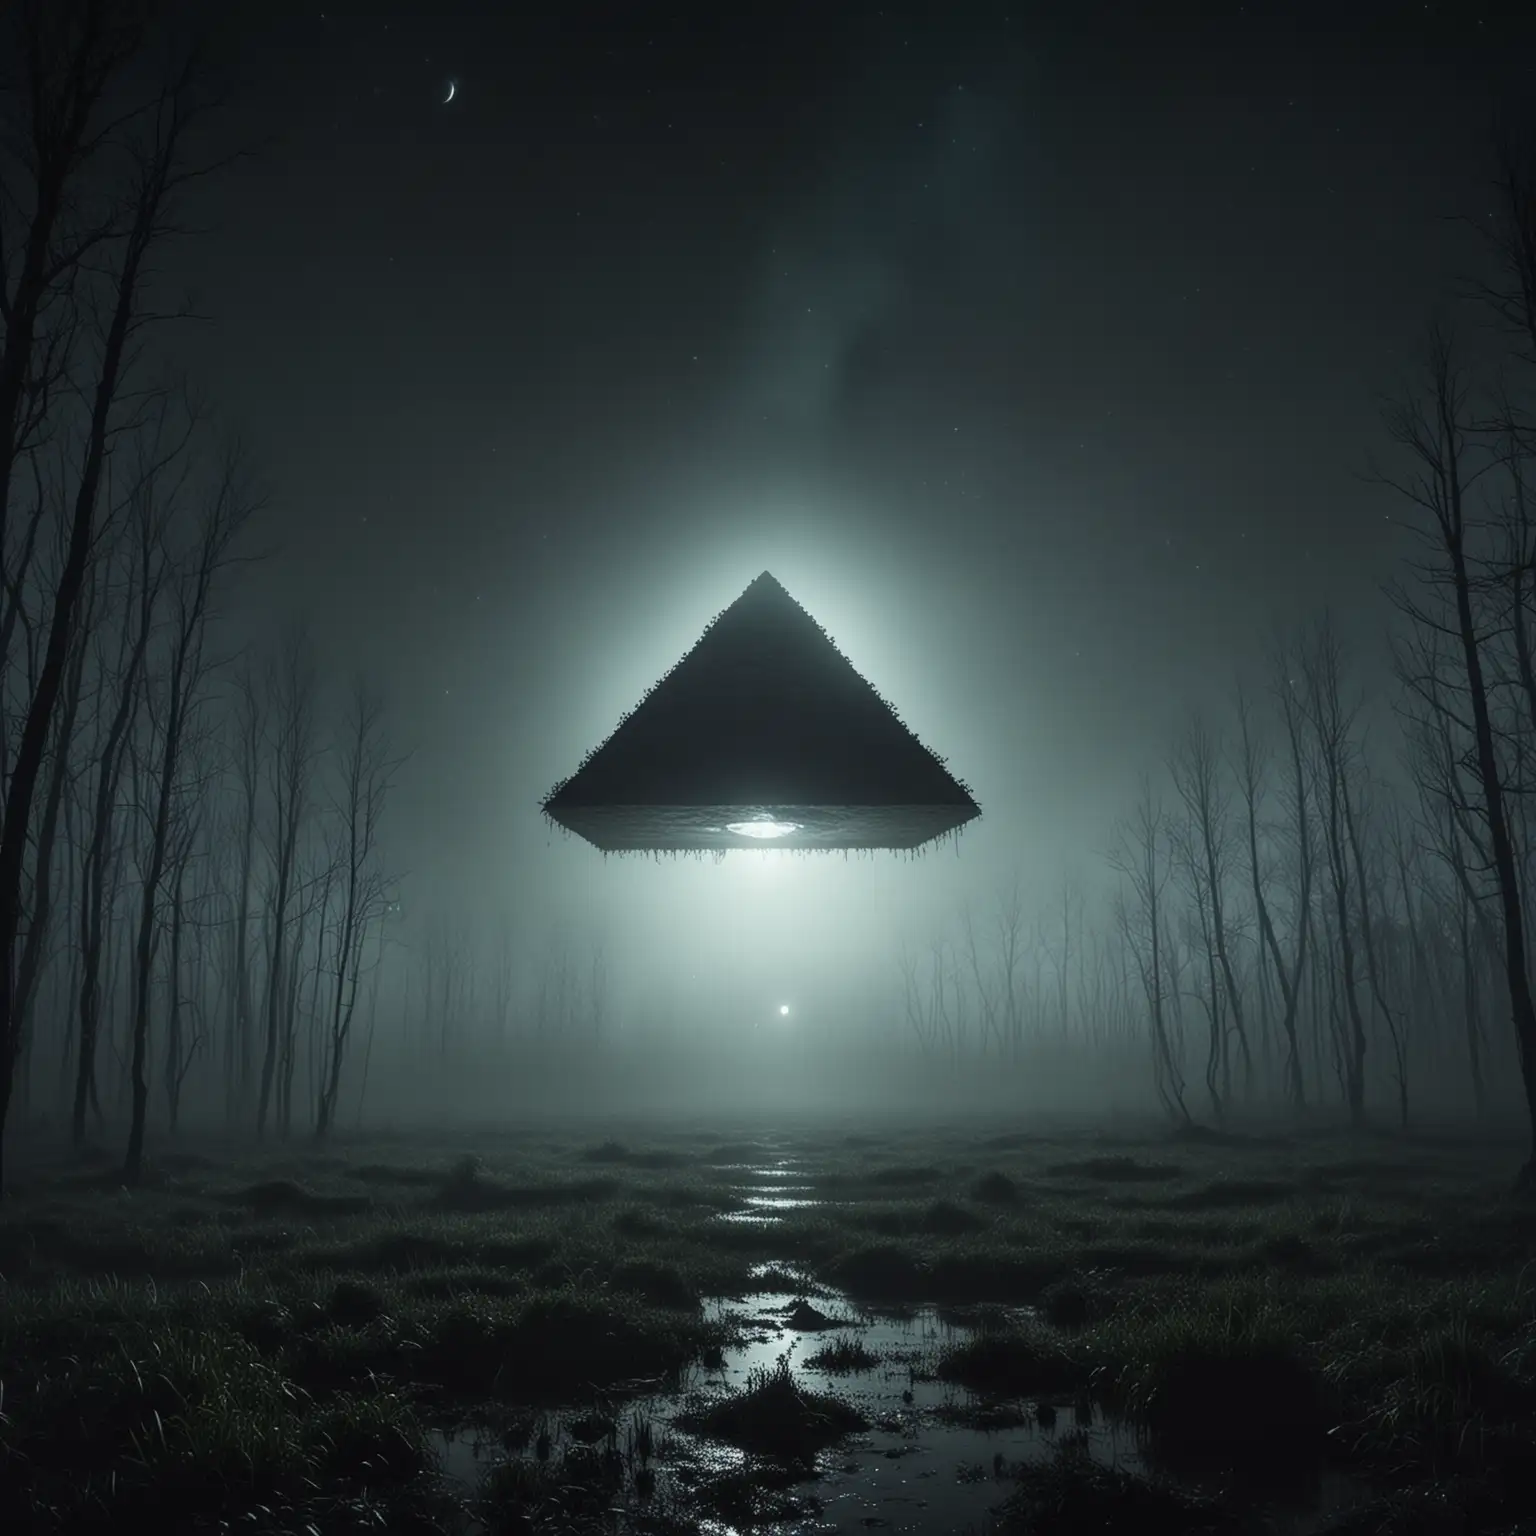 ufo w kształcie piraminy na niebie, ciemny las nocą, bagna, mgła, atmosfera horroru